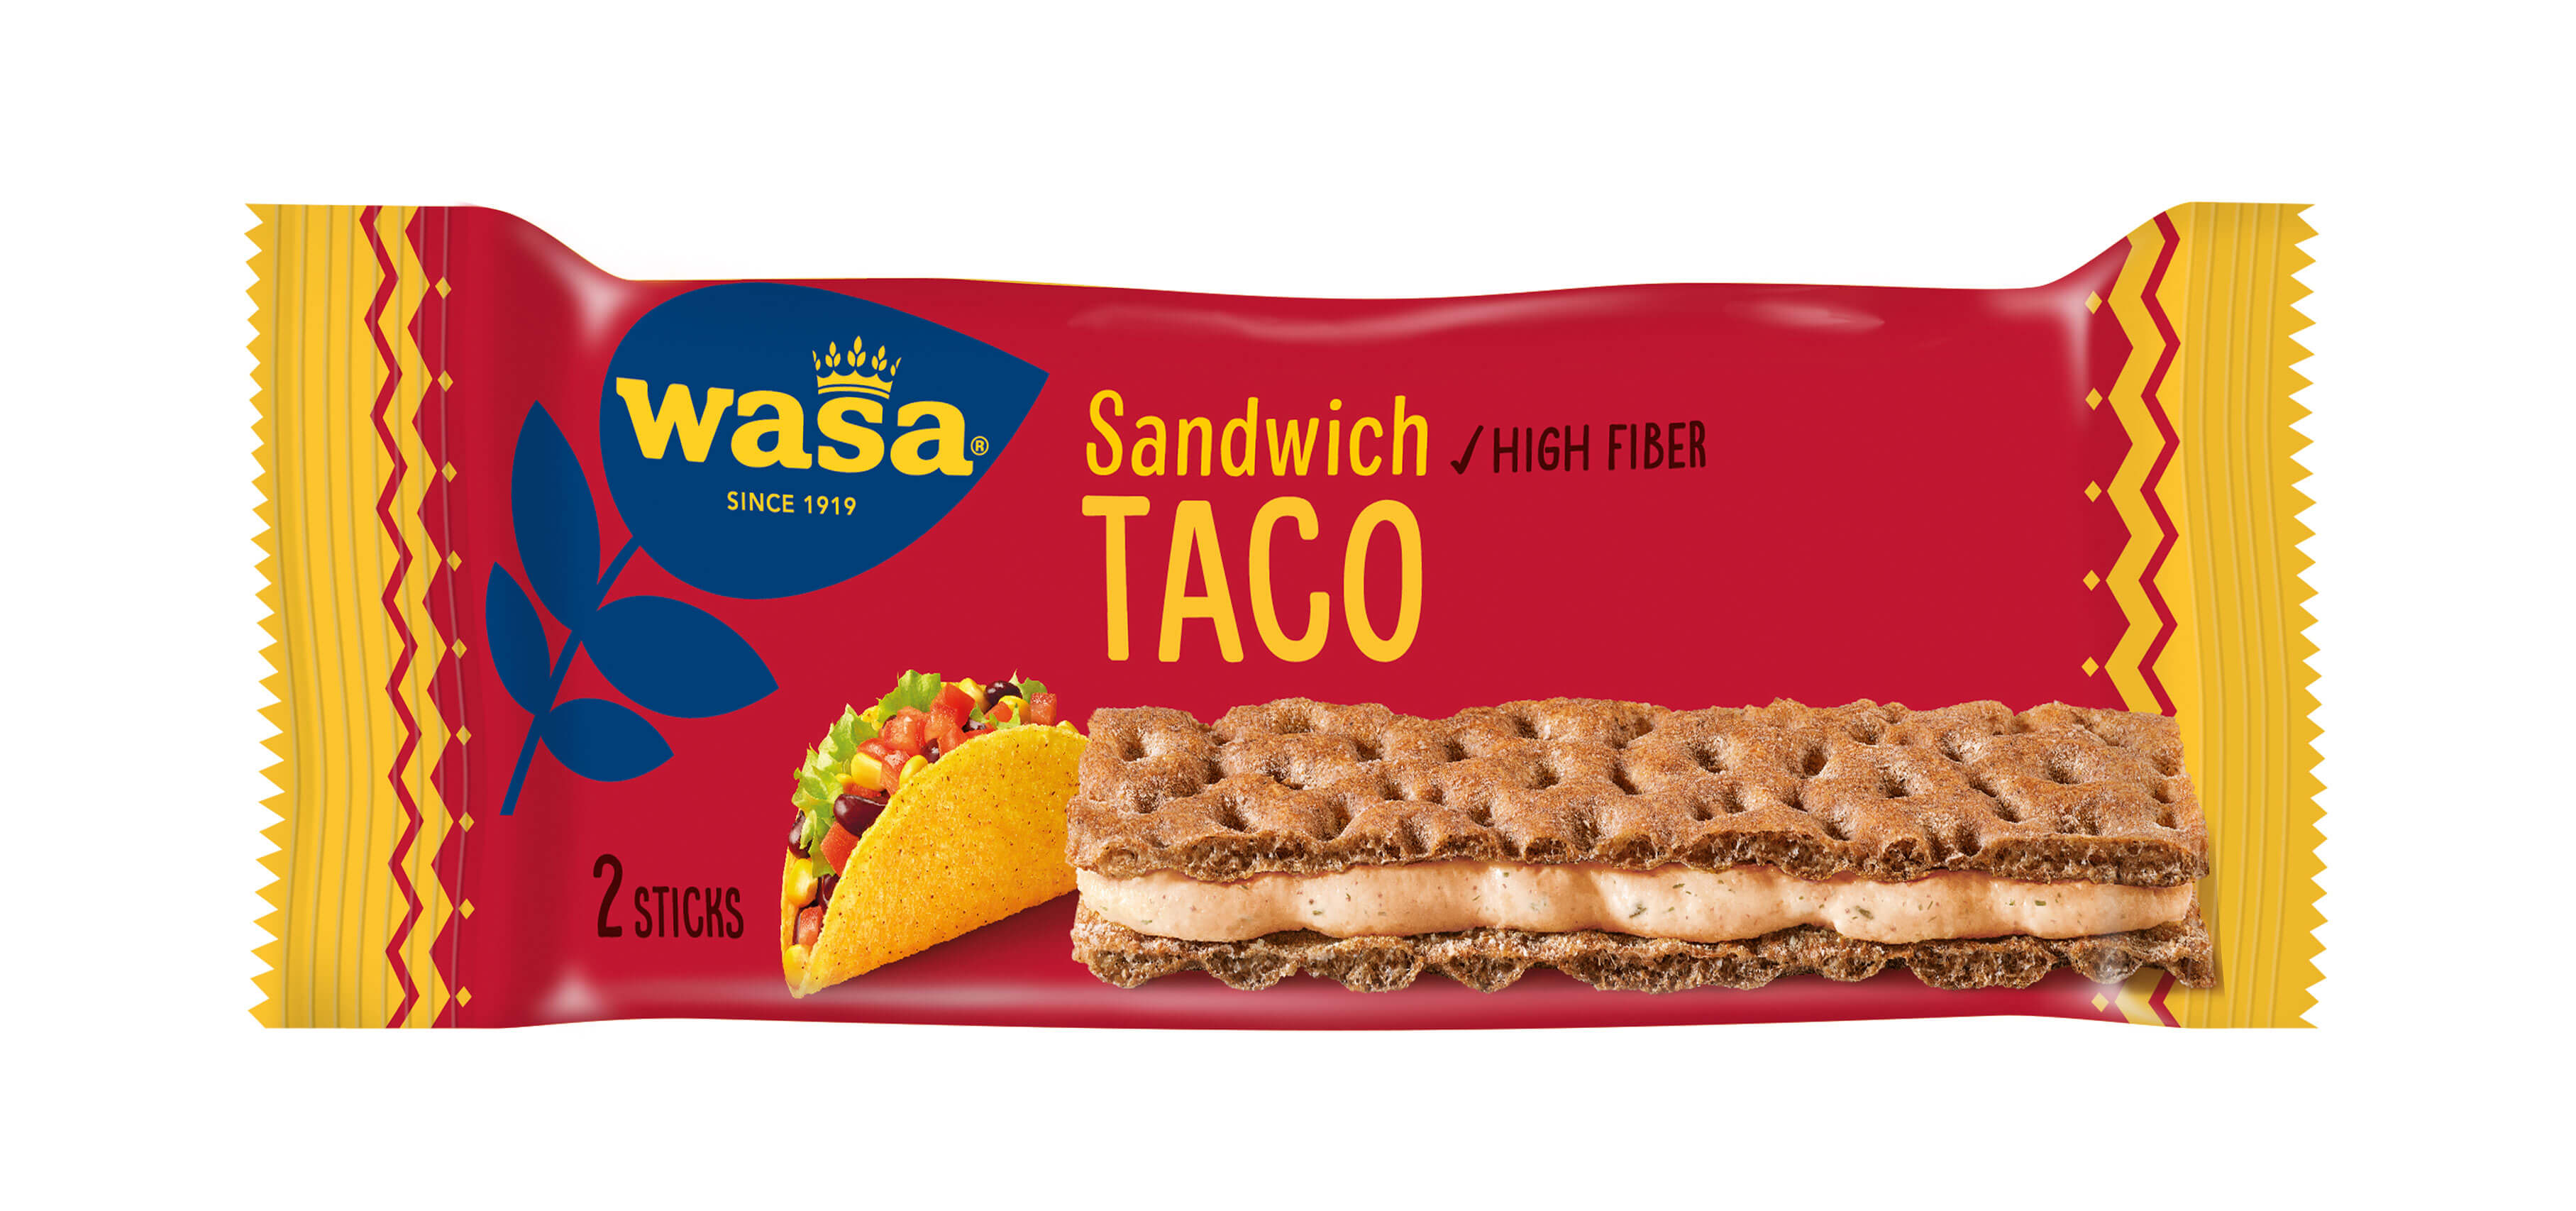 Wasa Sandwich Taco - Upptäck det perfekta mellanmålet, gott knäckebröd med krämig ostfyllning. Utmärkt som ett lätt mellanmål på språng och som bra mellanmål på jobbet, efter skolan eller innan träning.